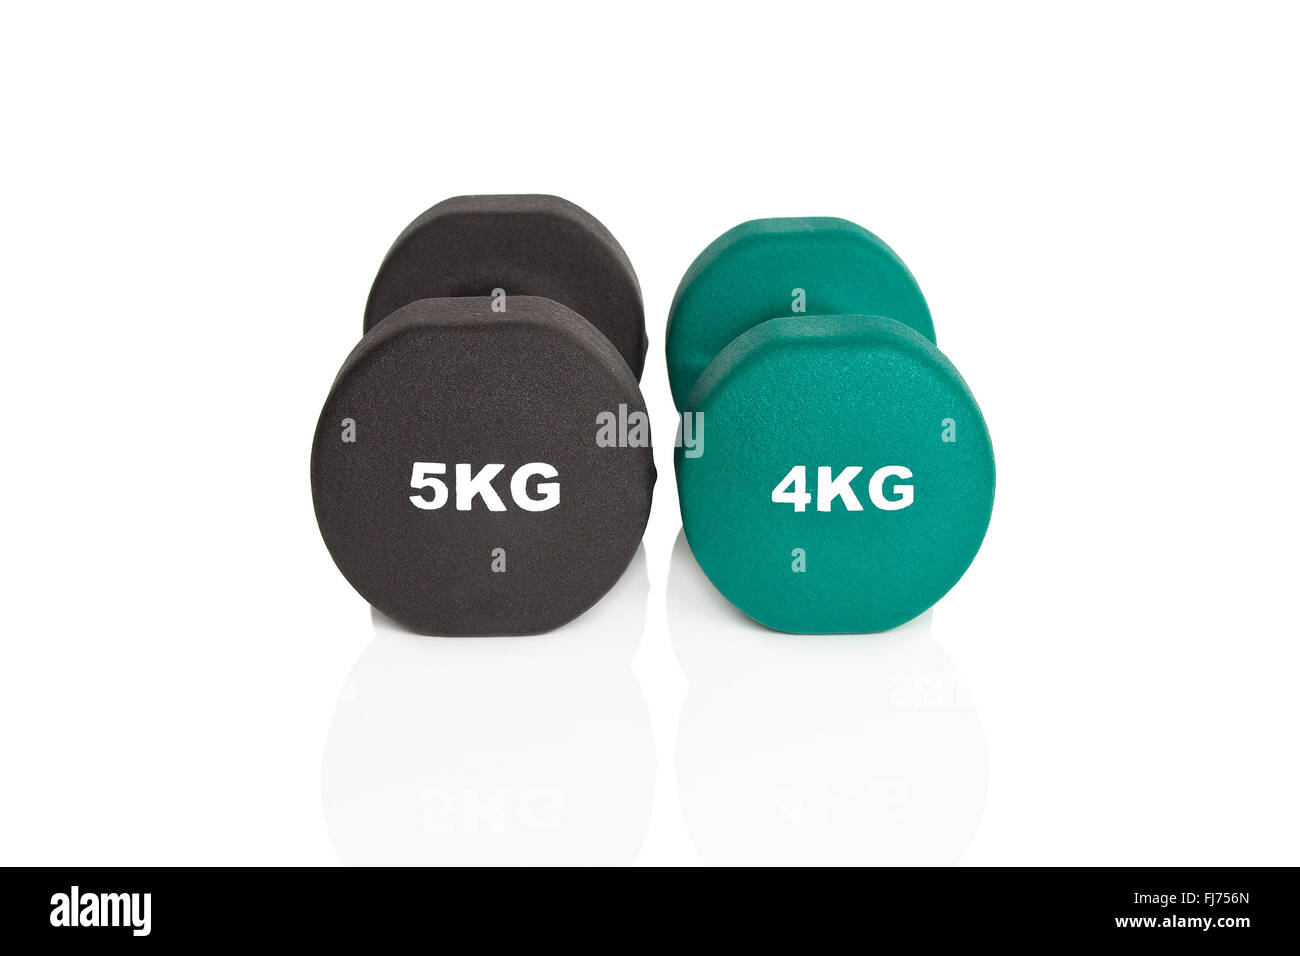 Grüne 4kg und schwarz 5kg Hanteln isoliert auf weißem Hintergrund. Gewichte für ein Fitness-Training. Stockfoto